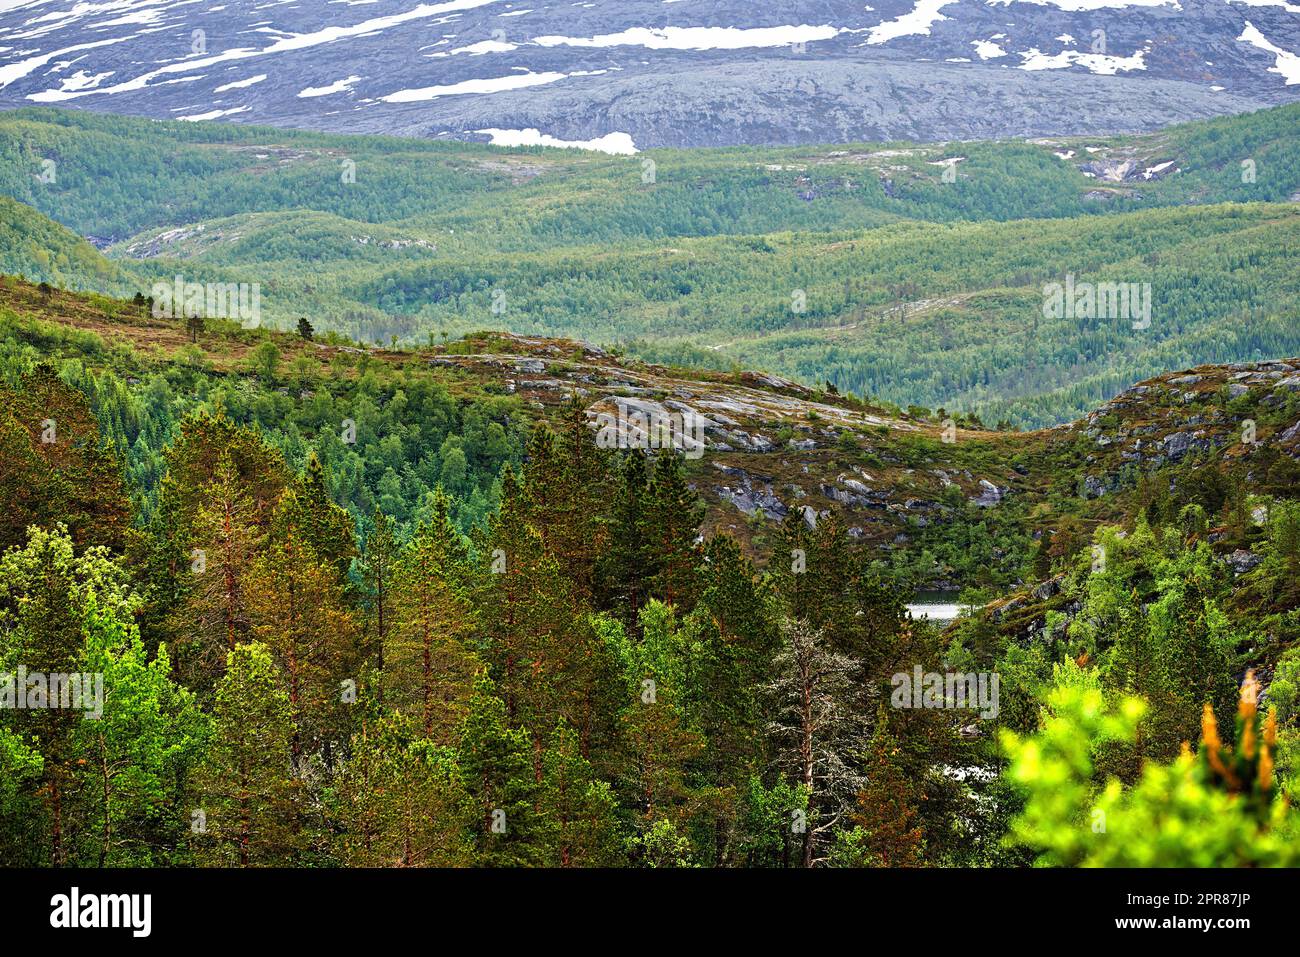 Malerische Landschaft von Bodo in Nordland mit natürlicher Umgebung und Kopierbereich. Malerische Berge und üppige grüne Hügel mit blühenden Bäumen und Pflanzen. Wanderwege in der Landschaft Norwegens Stockfoto